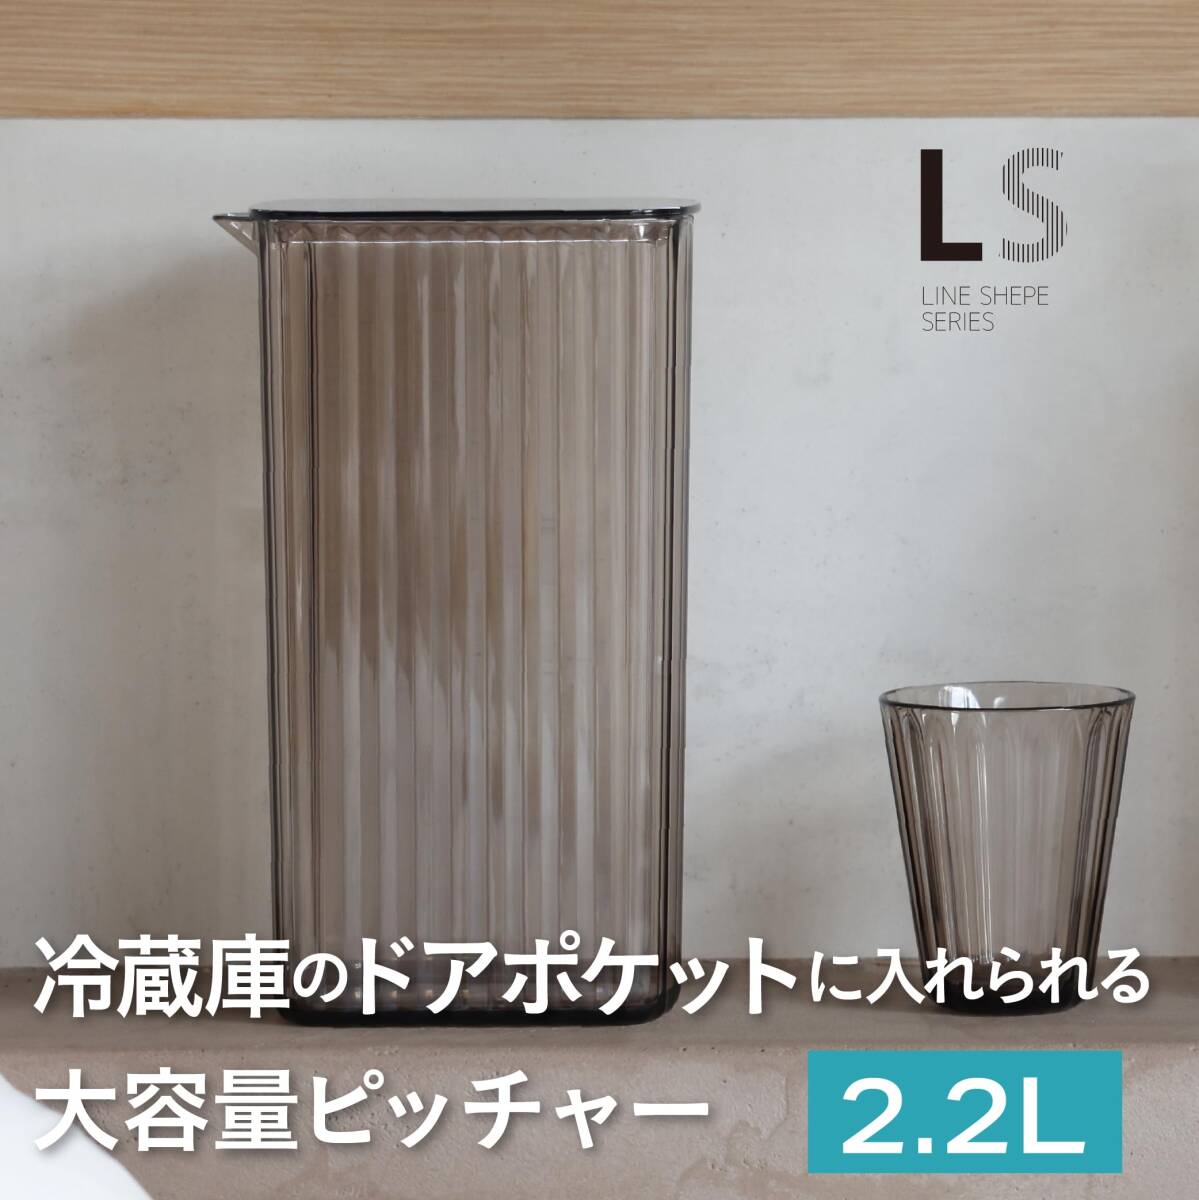 シービージャパン(CB JAPAN) ピッチャー ブルー 2.2L プラスチック製 麦茶 ポット LS ジャグ UCA_画像2